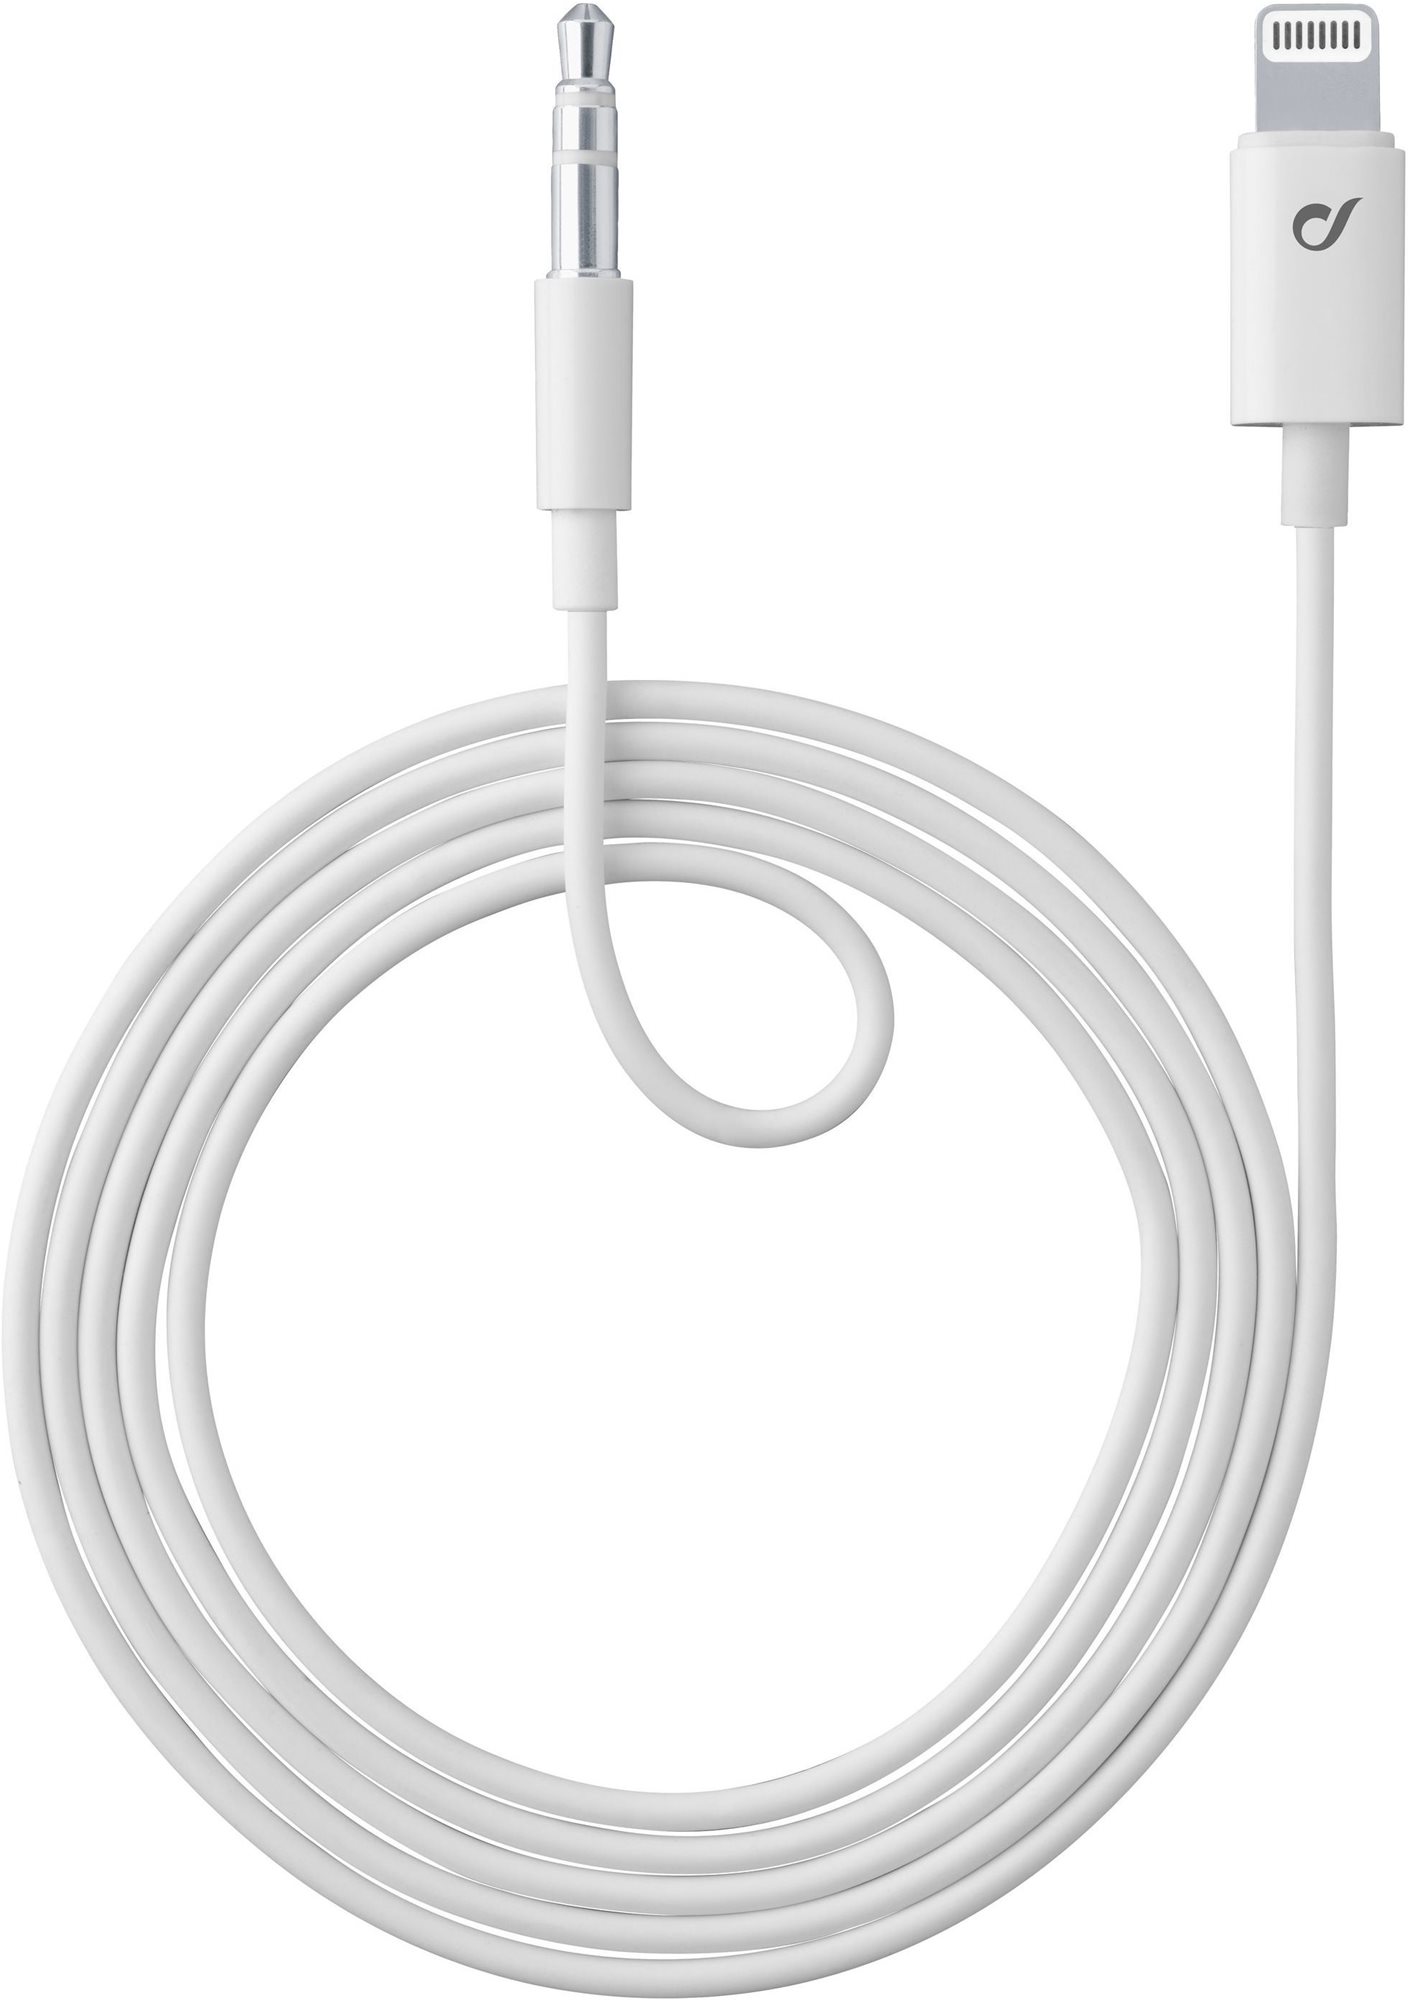 Cellularline Aux Music Cable Ligtning + 3,5 mm jack csatlakozókkal, MFI tanúsítvány, fehér